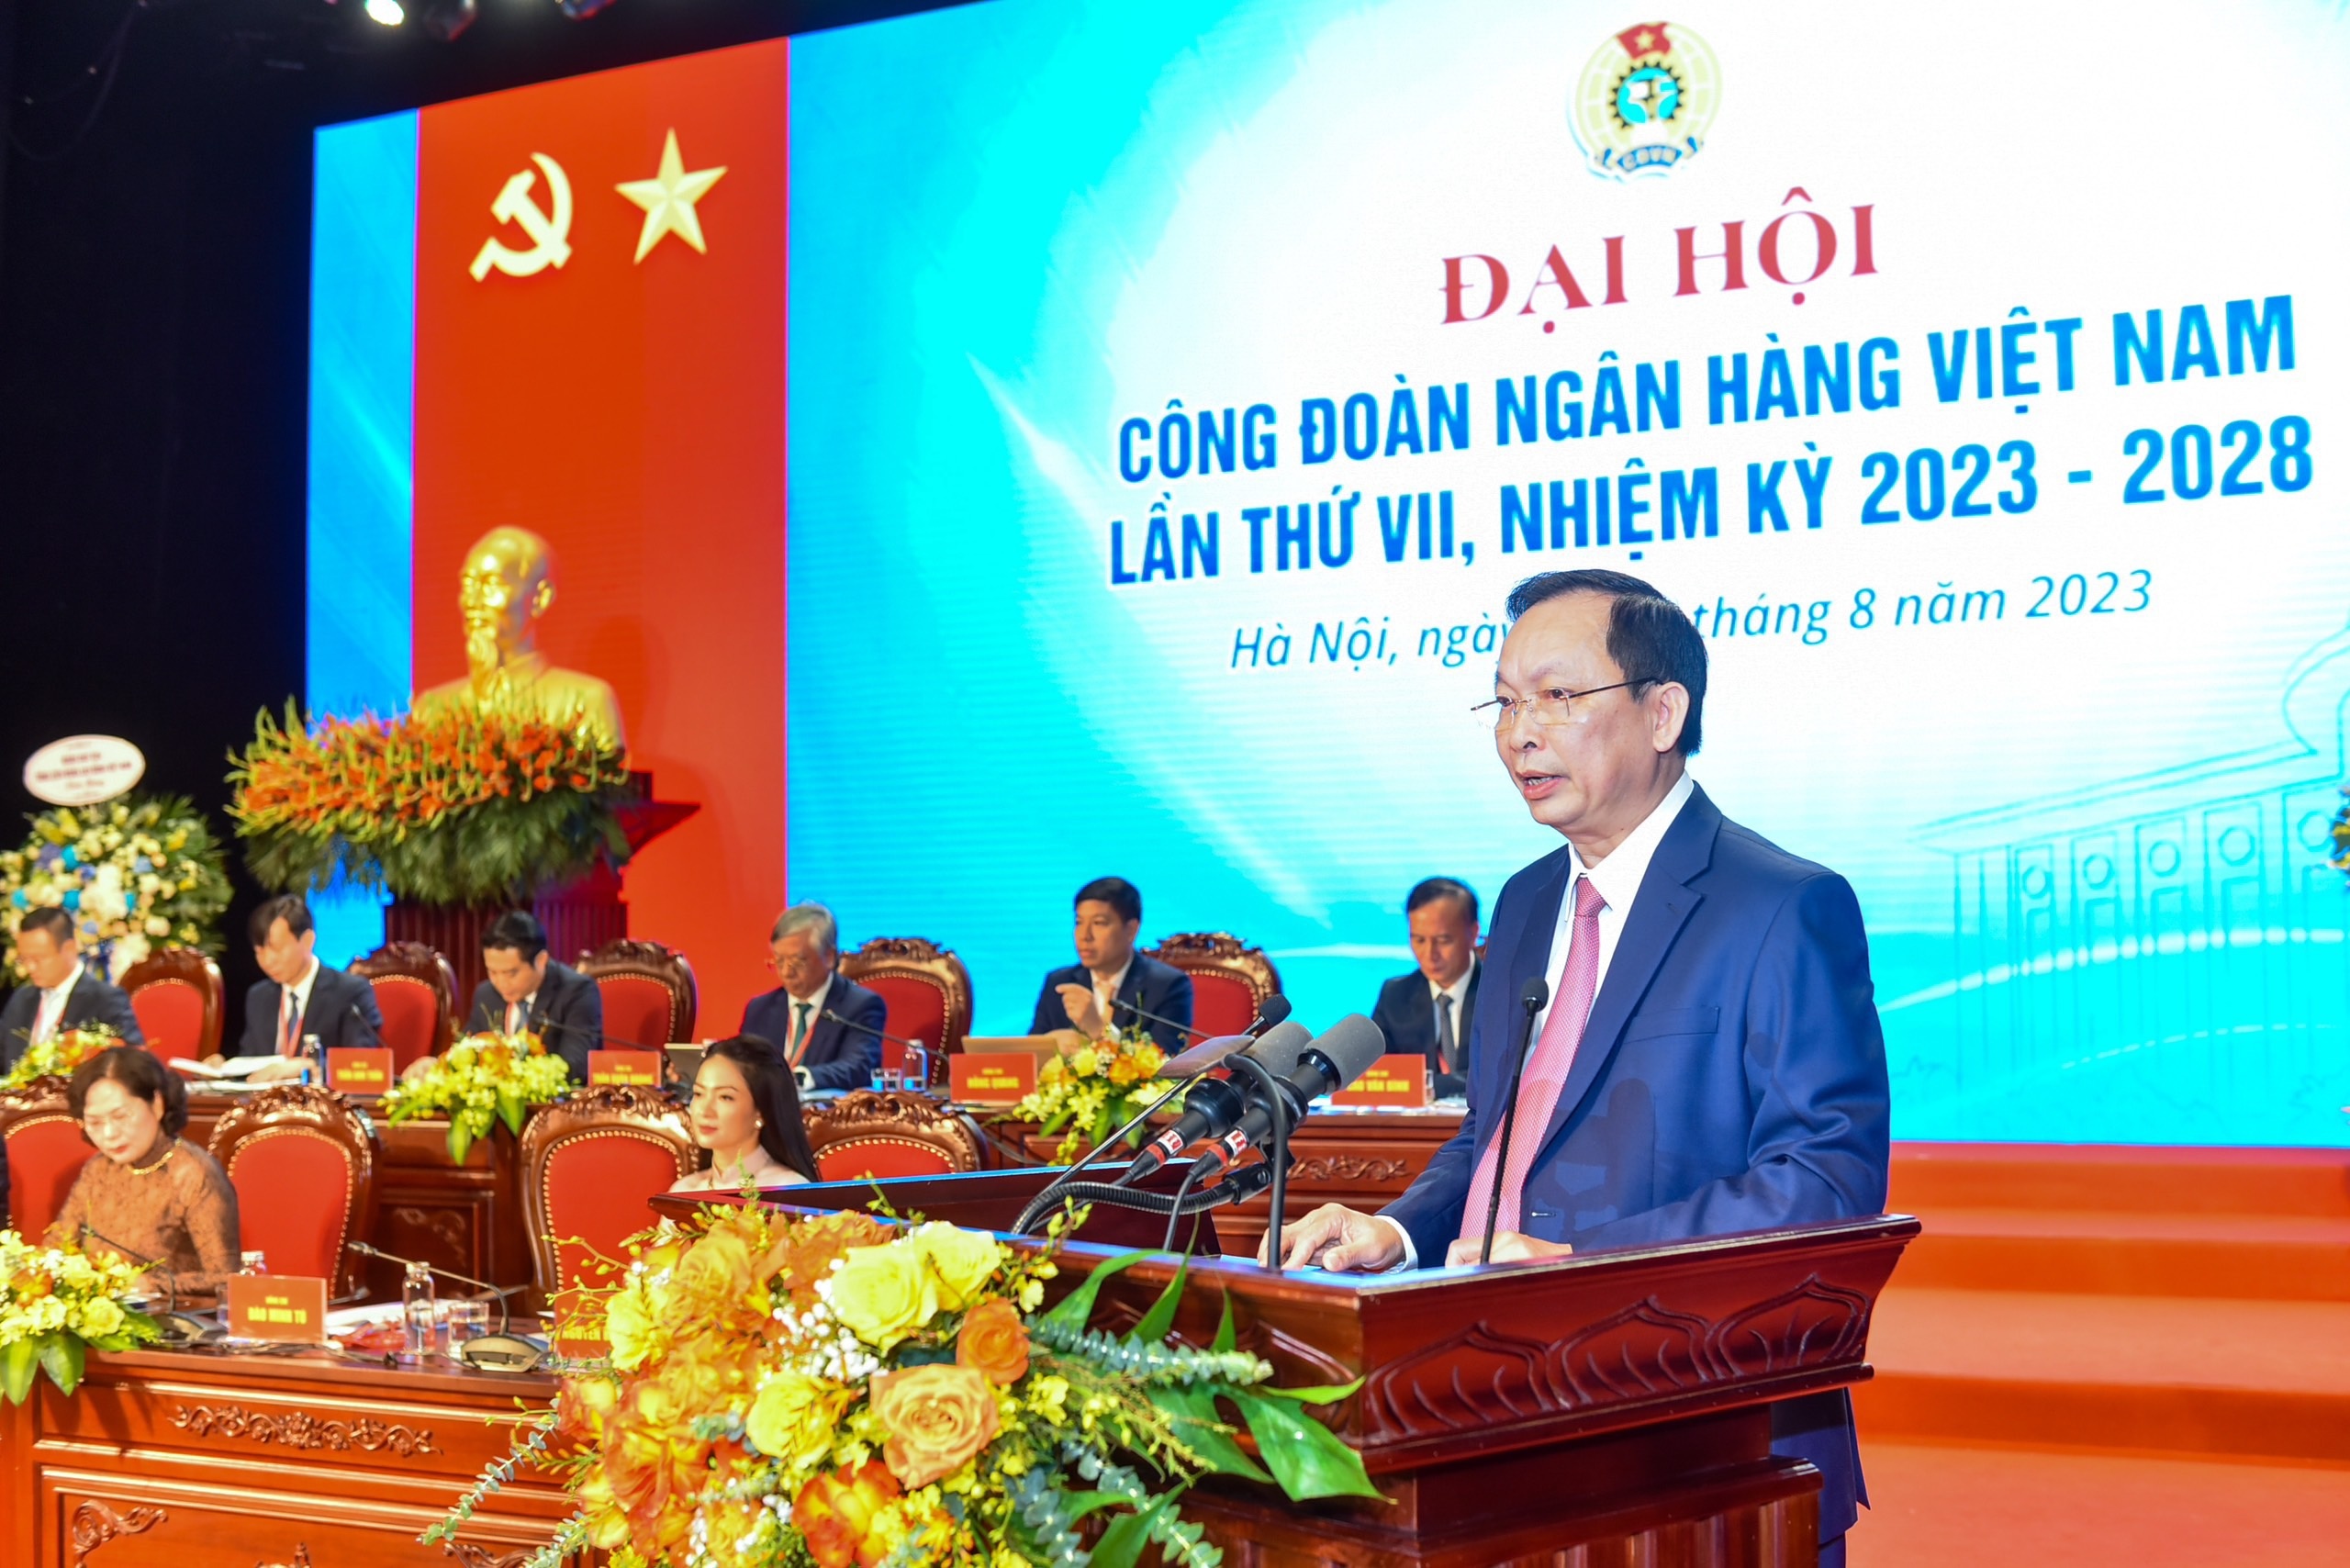 Khai mạc Đại hội Công đoàn Ngân hàng Việt Nam lần thứ VII, nhiệm kỳ 2023-2028